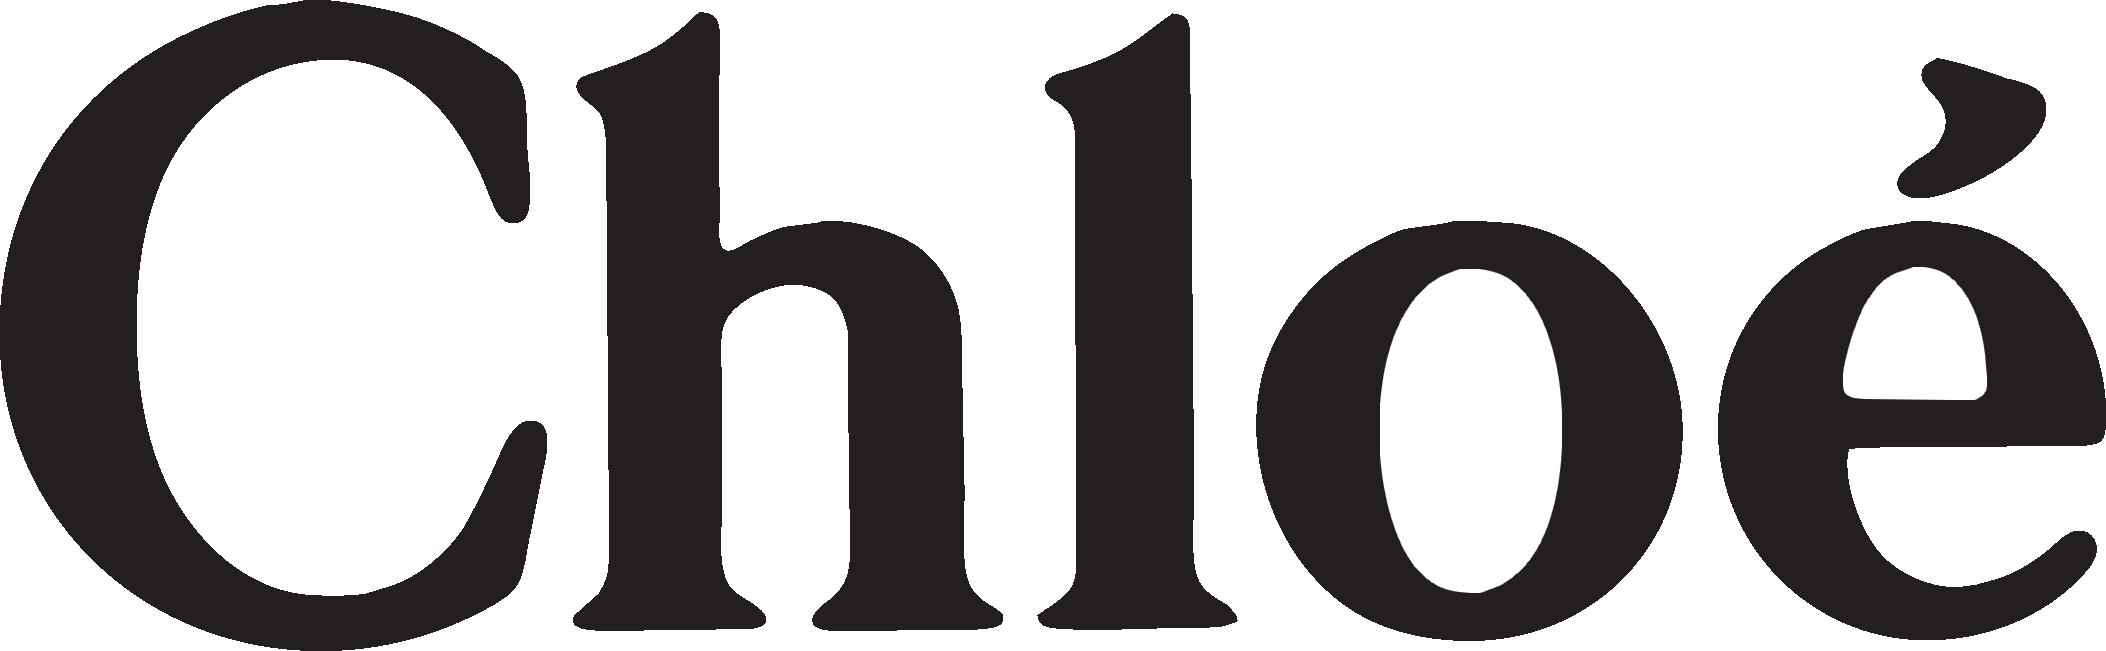 Chloe Logo - PNG Logo Vector Brand Downloads (SVG, EPS)